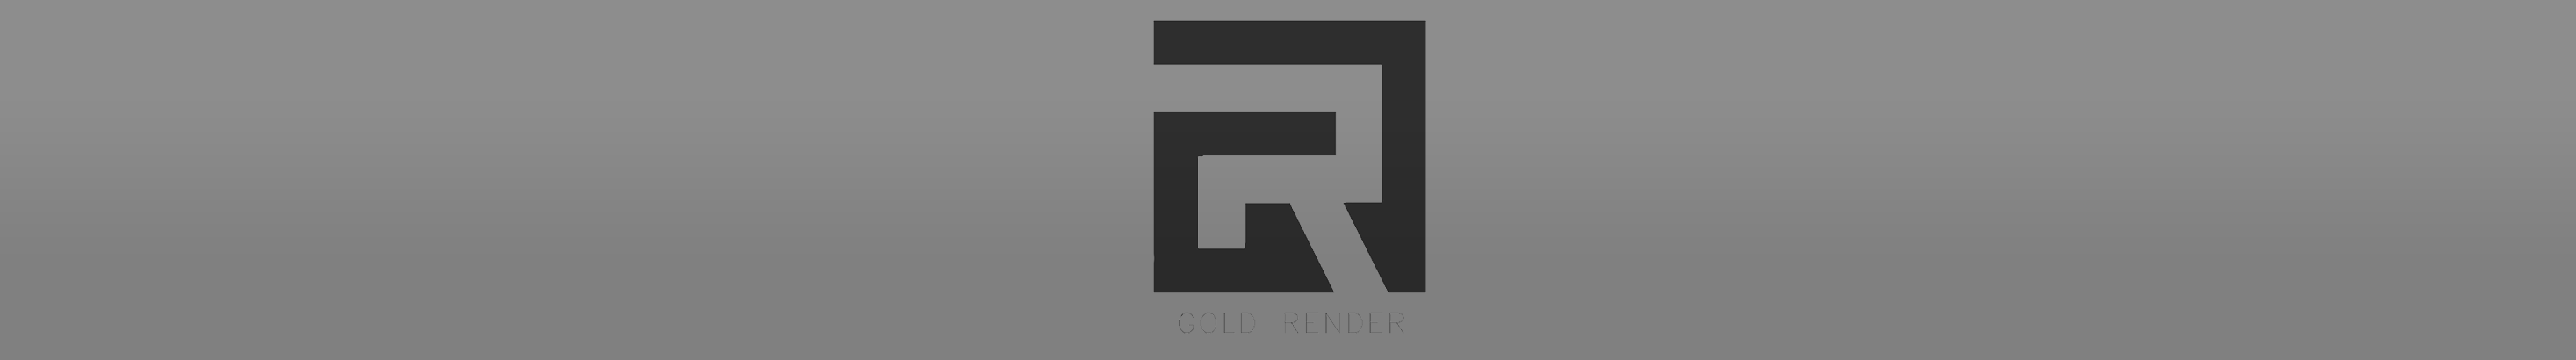 GOLD RENDER のプロファイルバナー